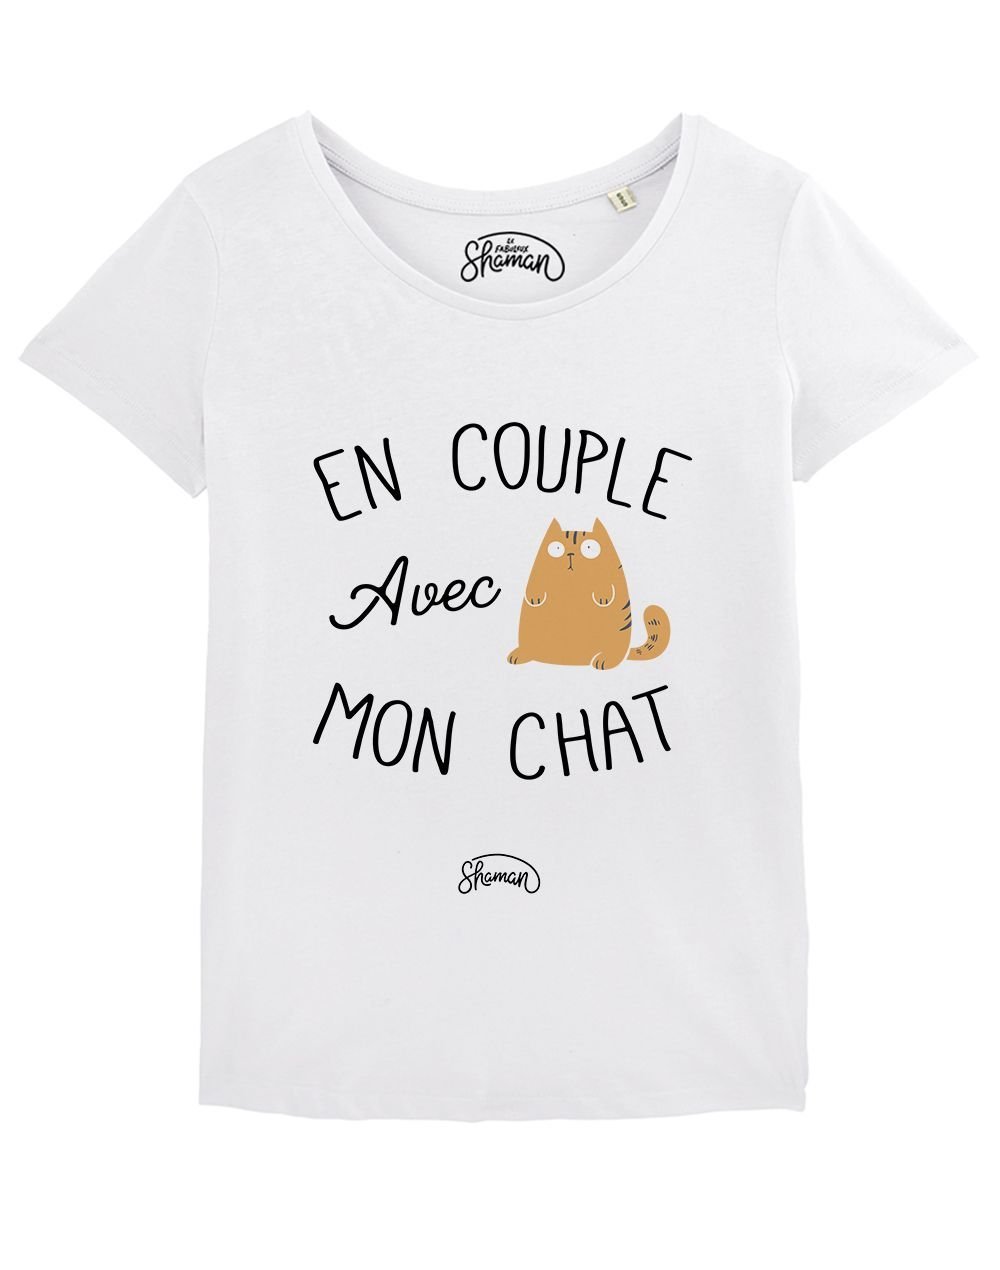 T-shirt " En couple avec mon chat"